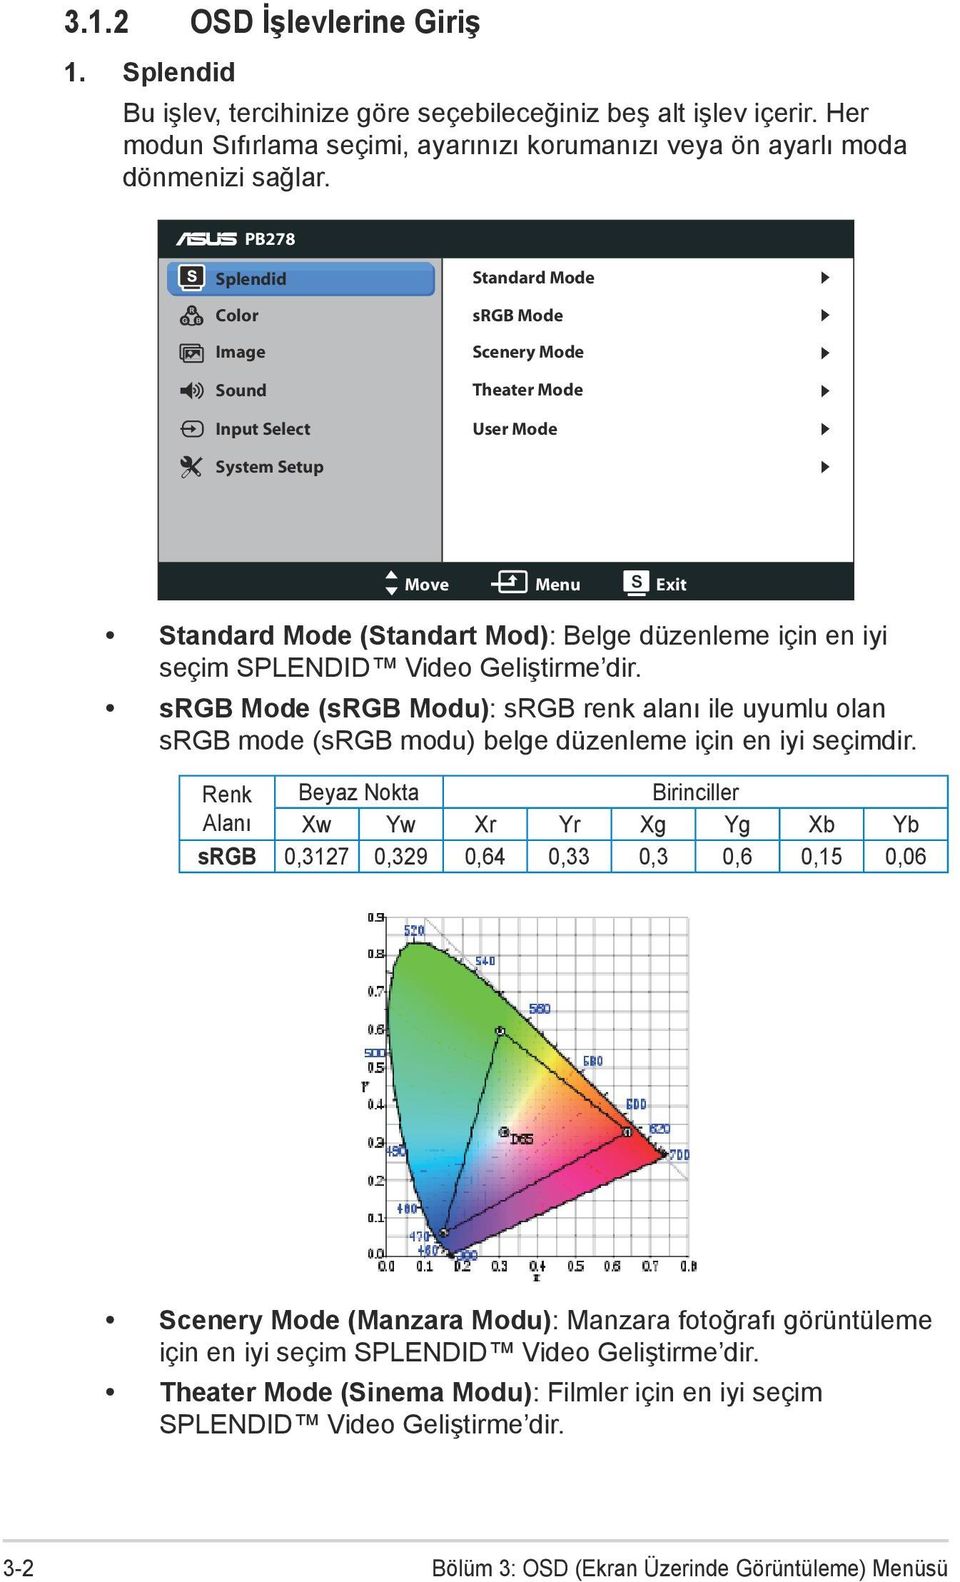 SPLENDID Video Geliştirme dir. srgb Mode (srgb Modu): srgb renk alanı ile uyumlu olan srgb mode (srgb modu) belge düzenleme için en iyi seçimdir.